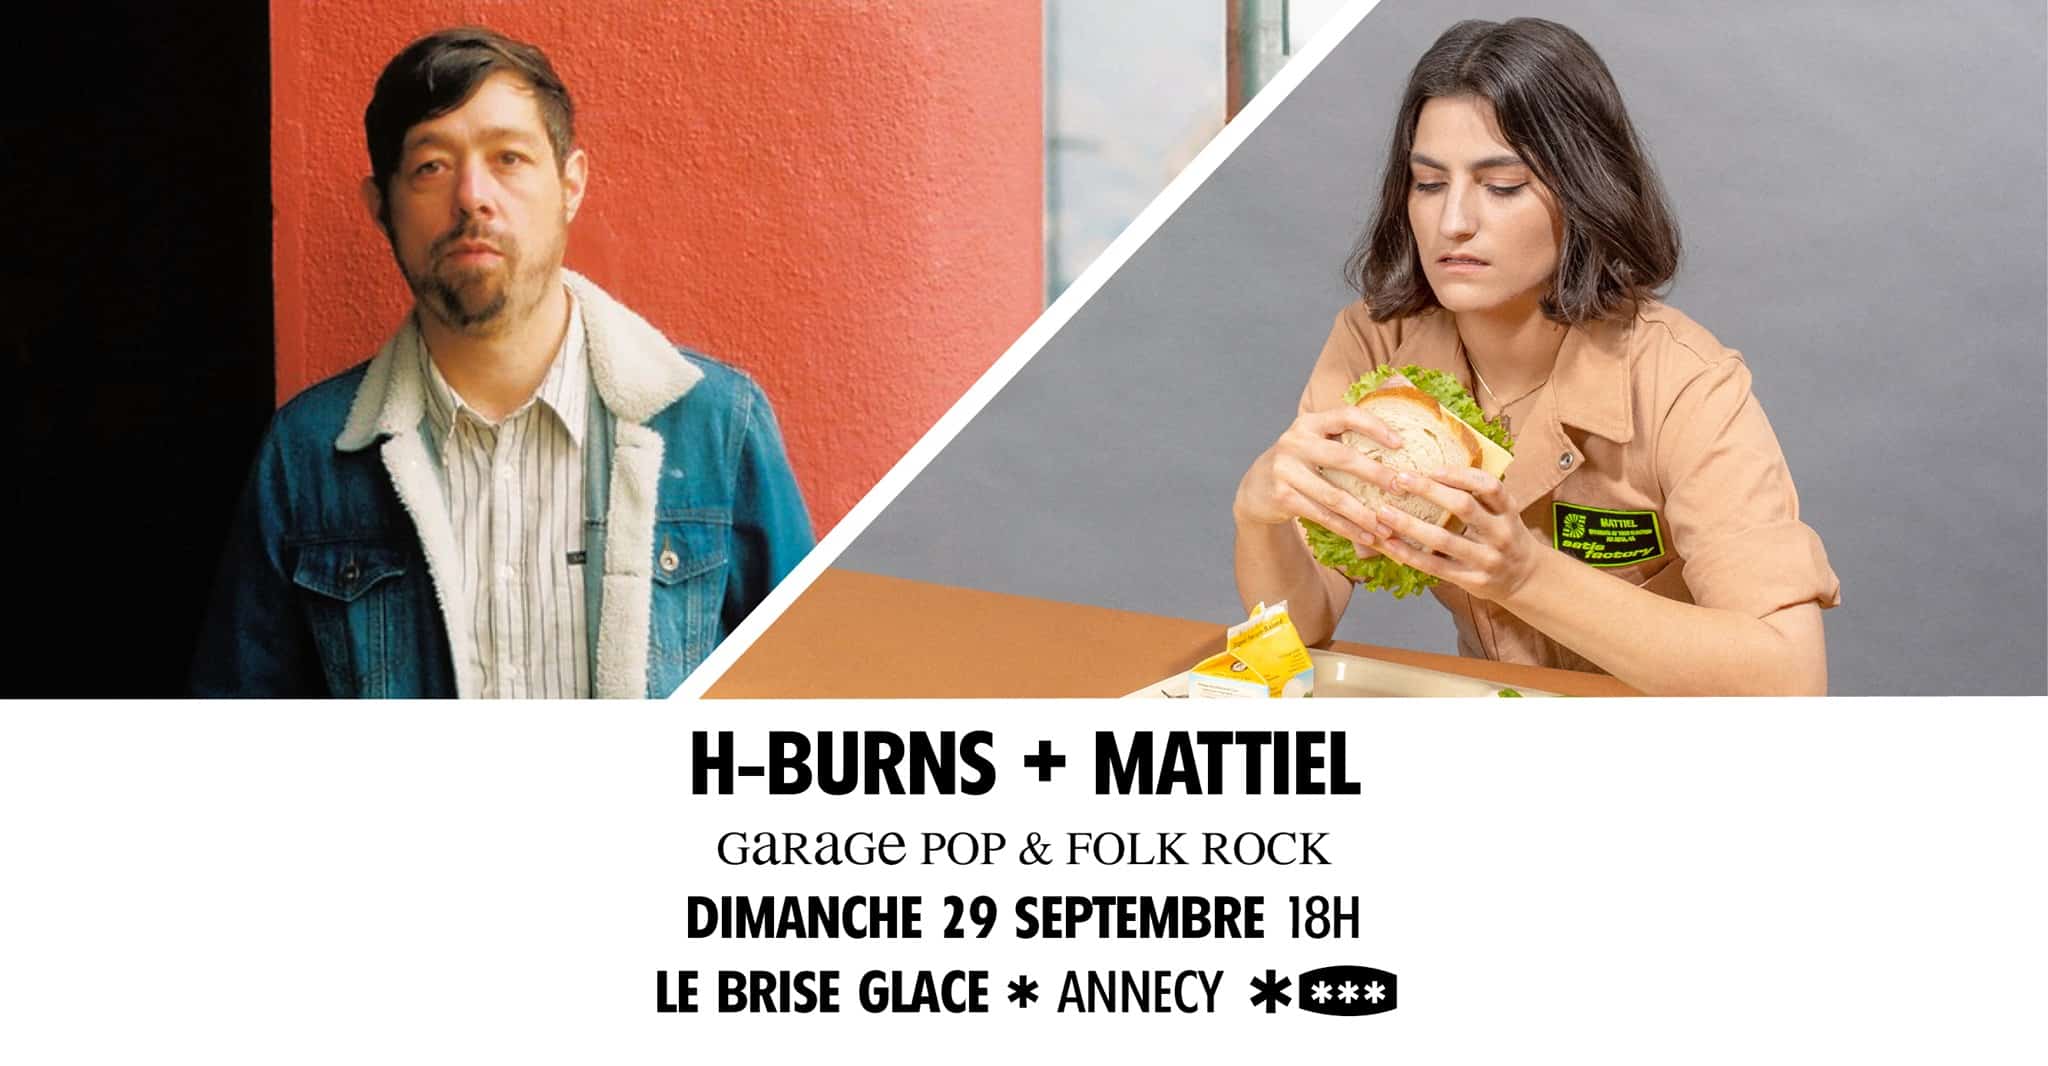 Mattiel + H-Burns